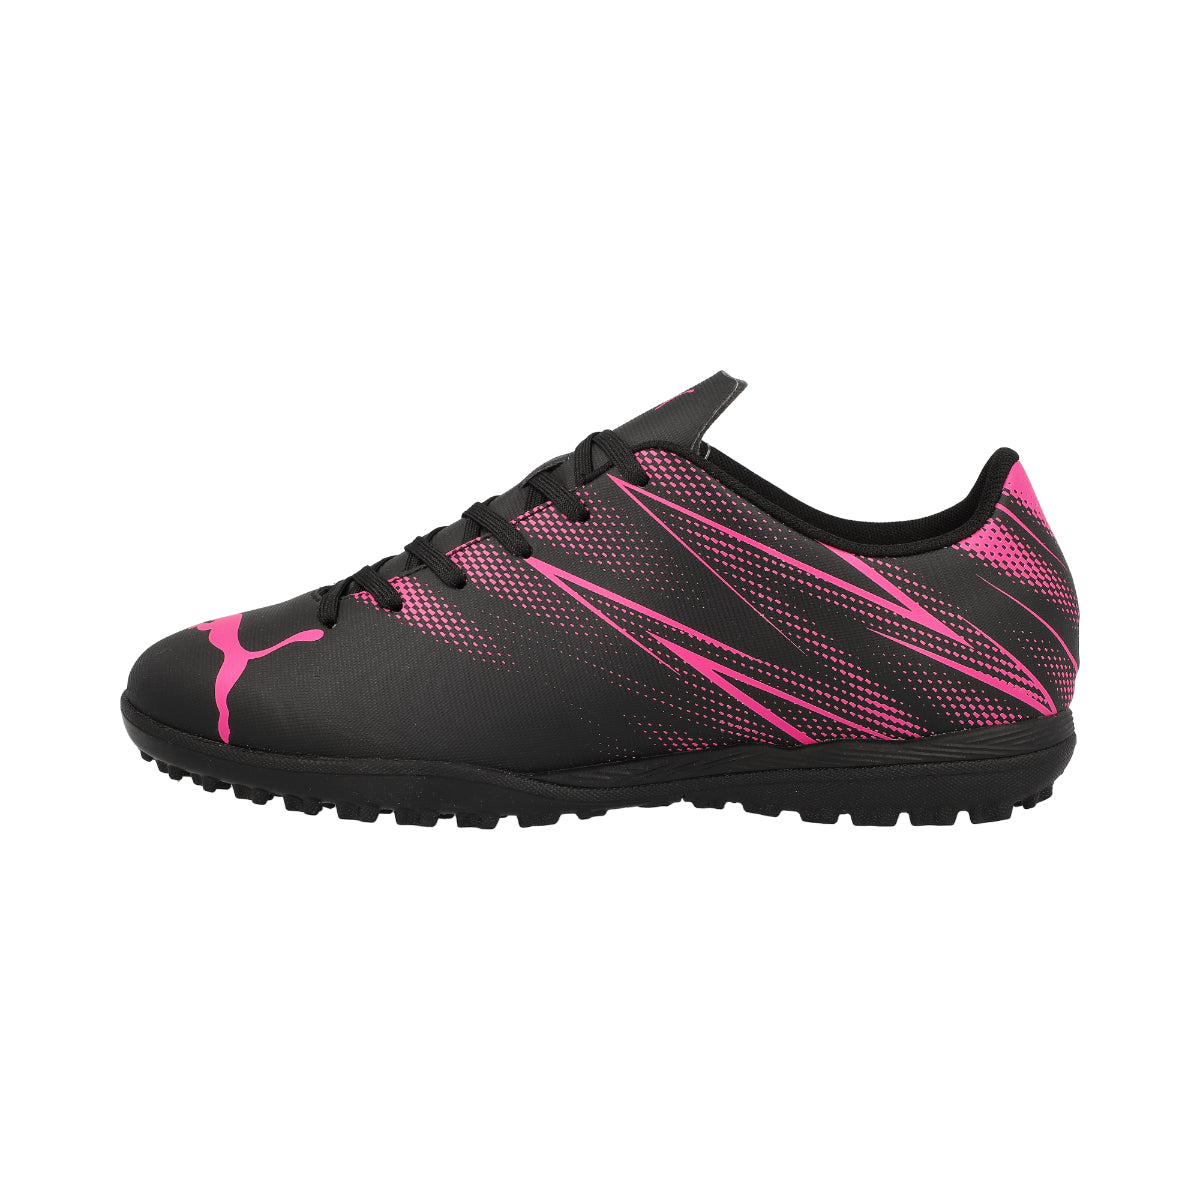 Puma Attacanto Junior TT Football Boots - 2 - Black/Pink